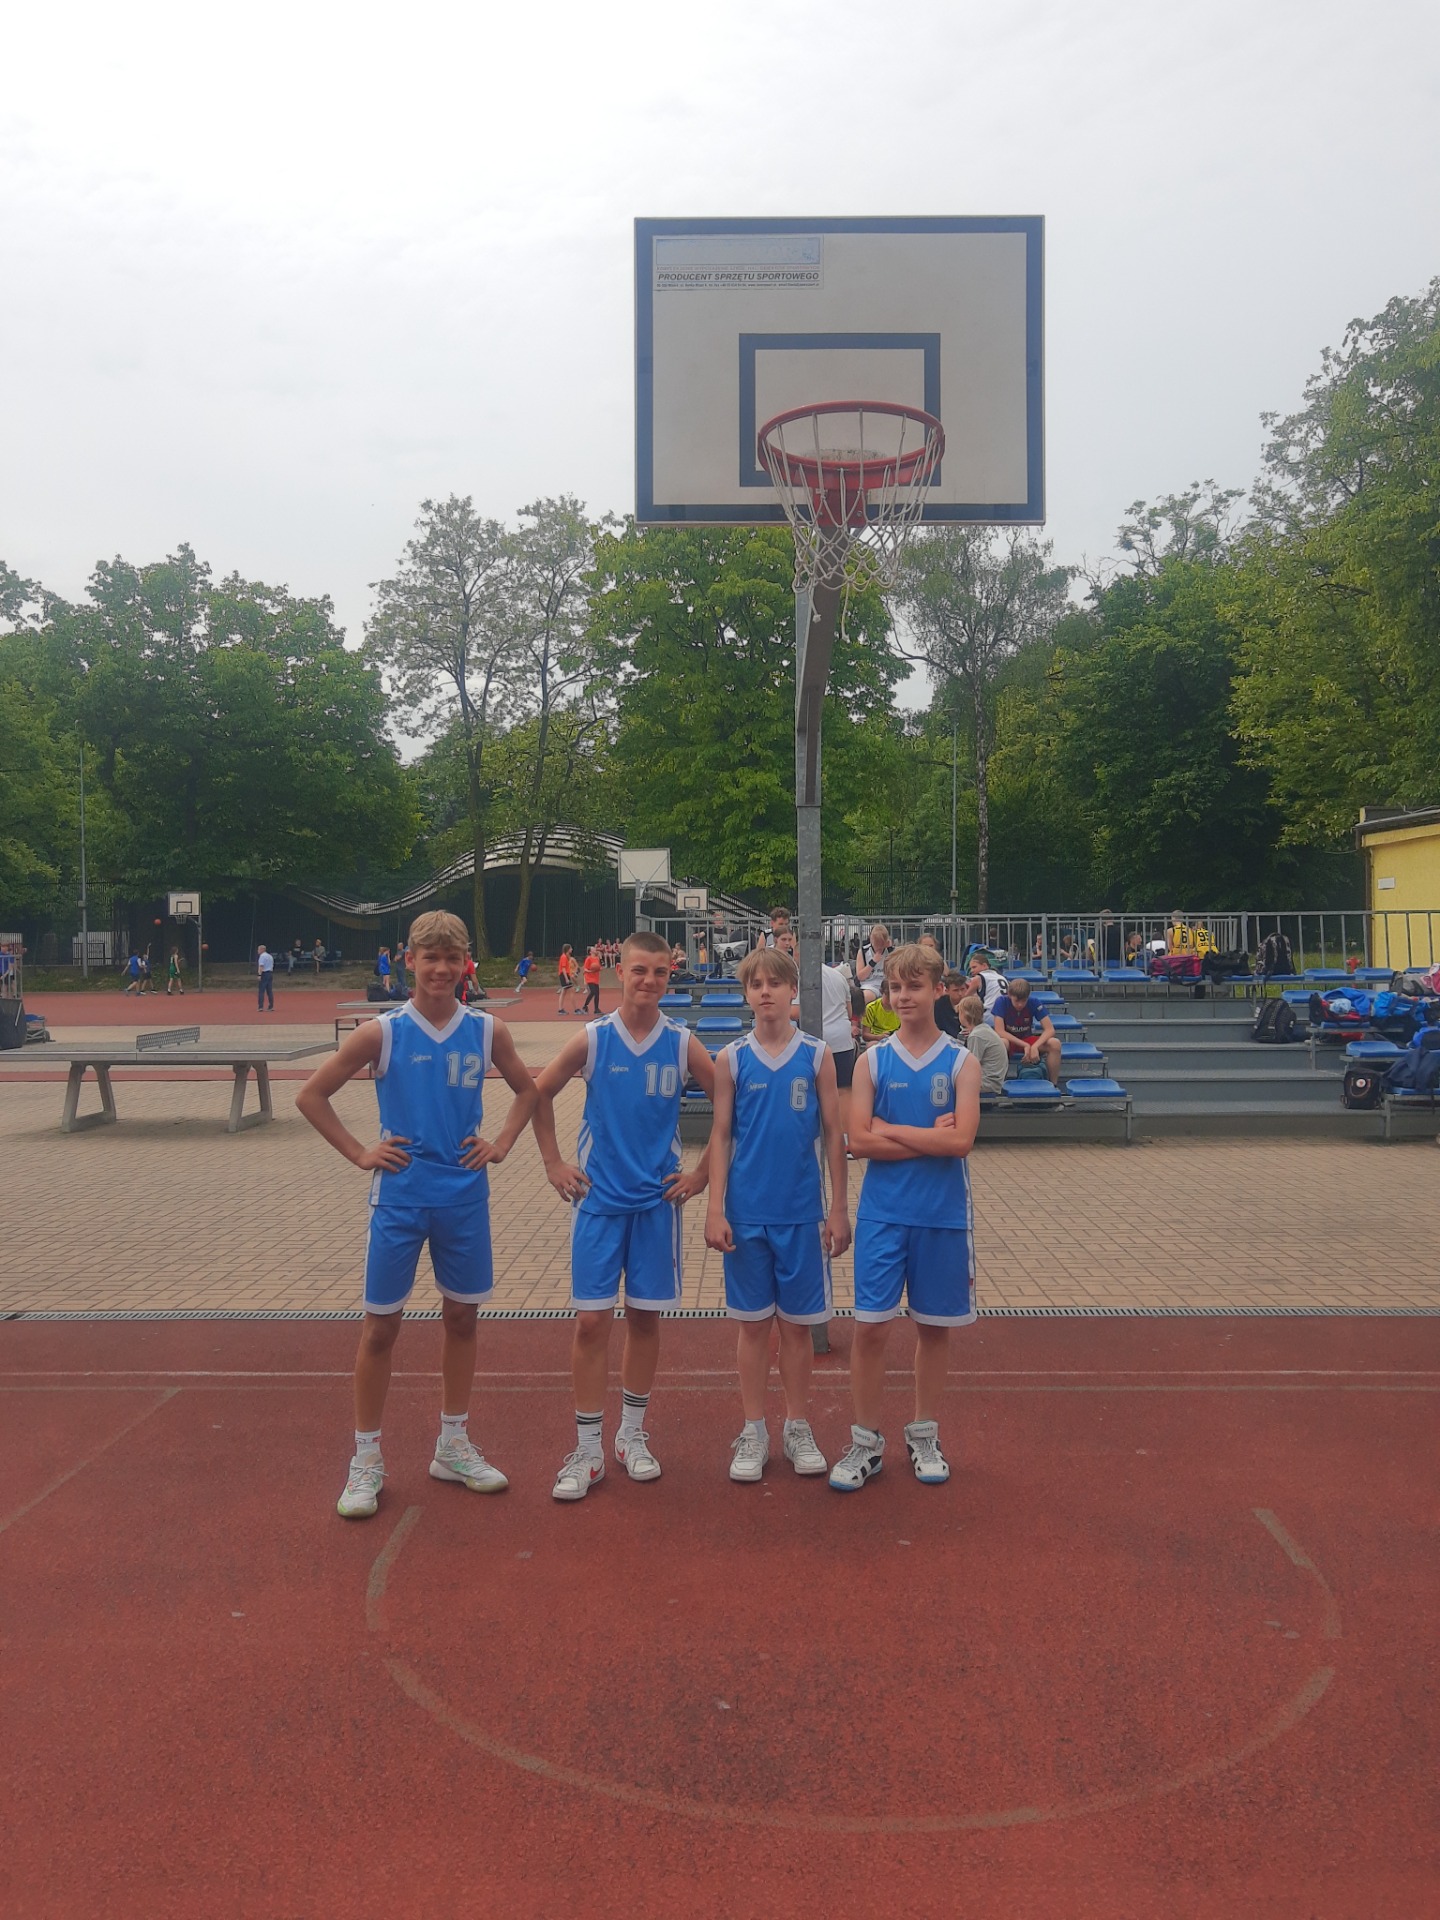 Trzech chłopców w sportowych niebieskich strojach na tle kosza do gry w koszykówkę.